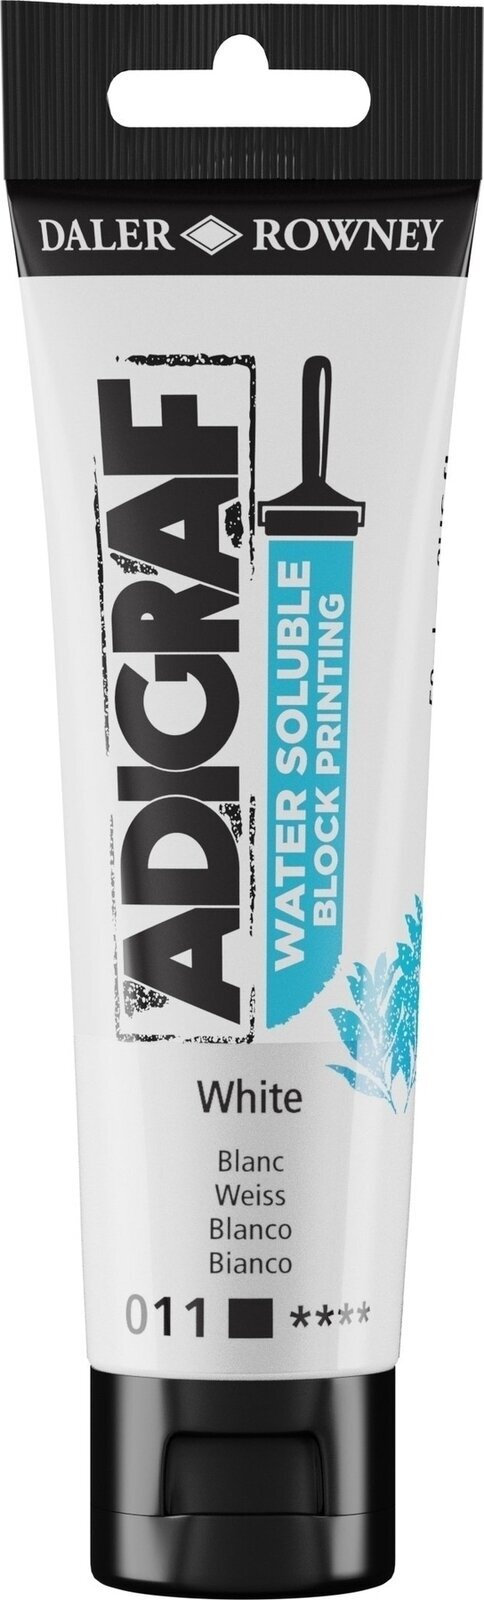 Verf voor linosnede Daler Rowney Adigraf Block Printing Water Soluble Colour Verf voor linosnede White 59 ml